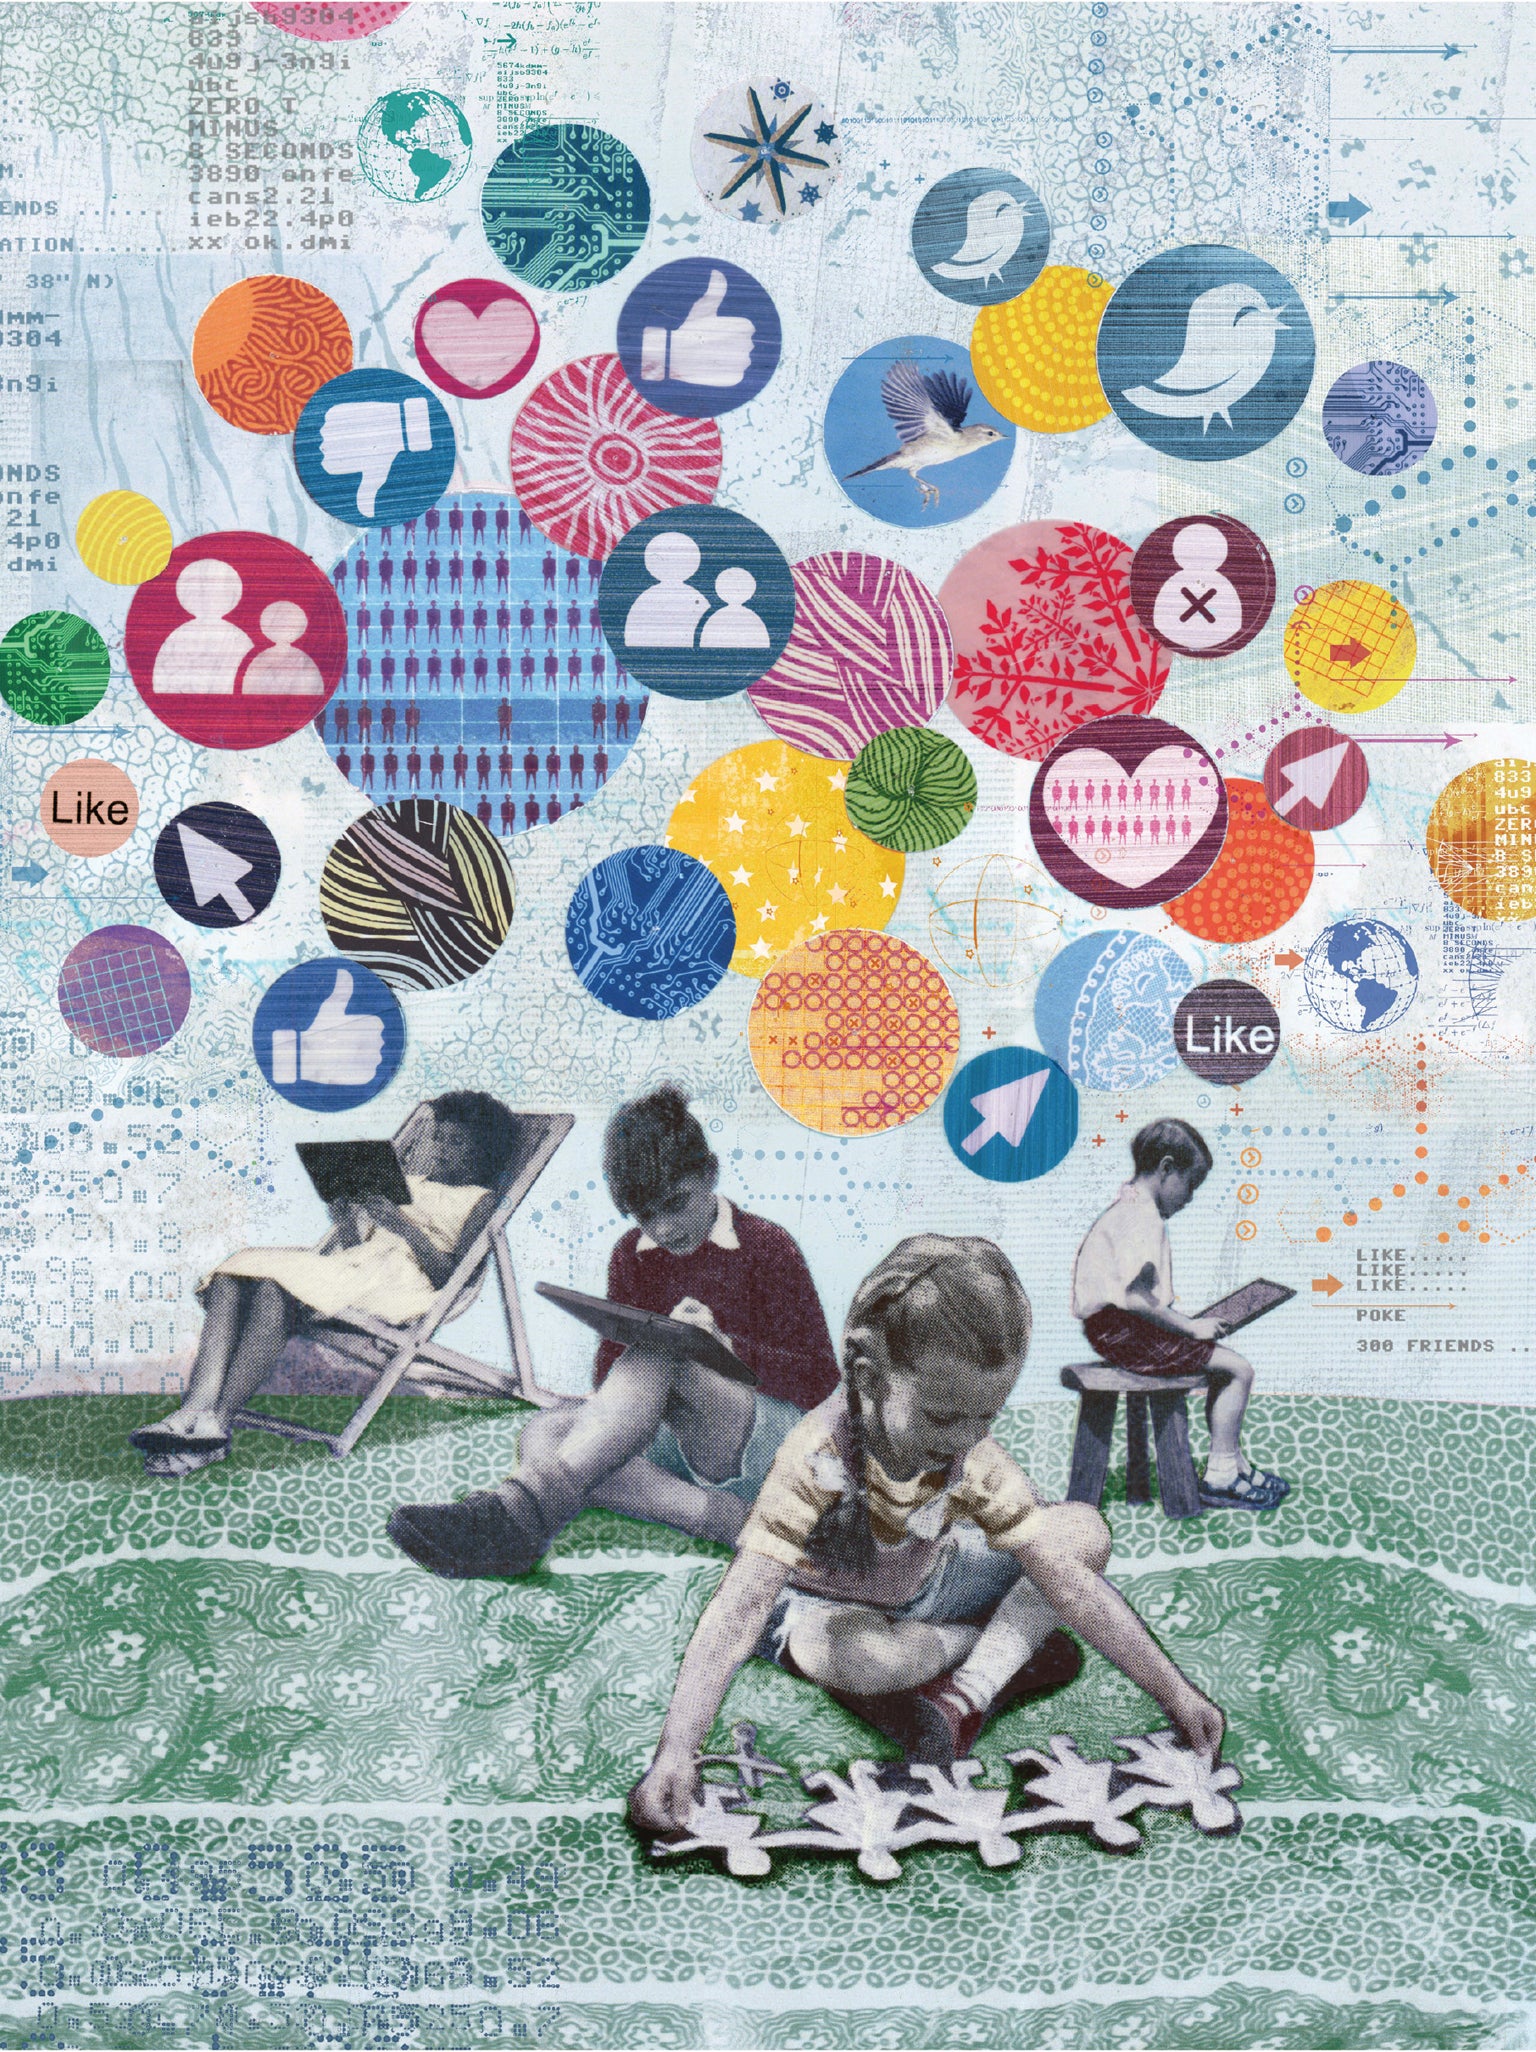 ميكروفون حصاة البر الرئيسى  تكنولوجيا التواصل الاجتماعي تمزق الروابط الاجتماعية - للعِلم